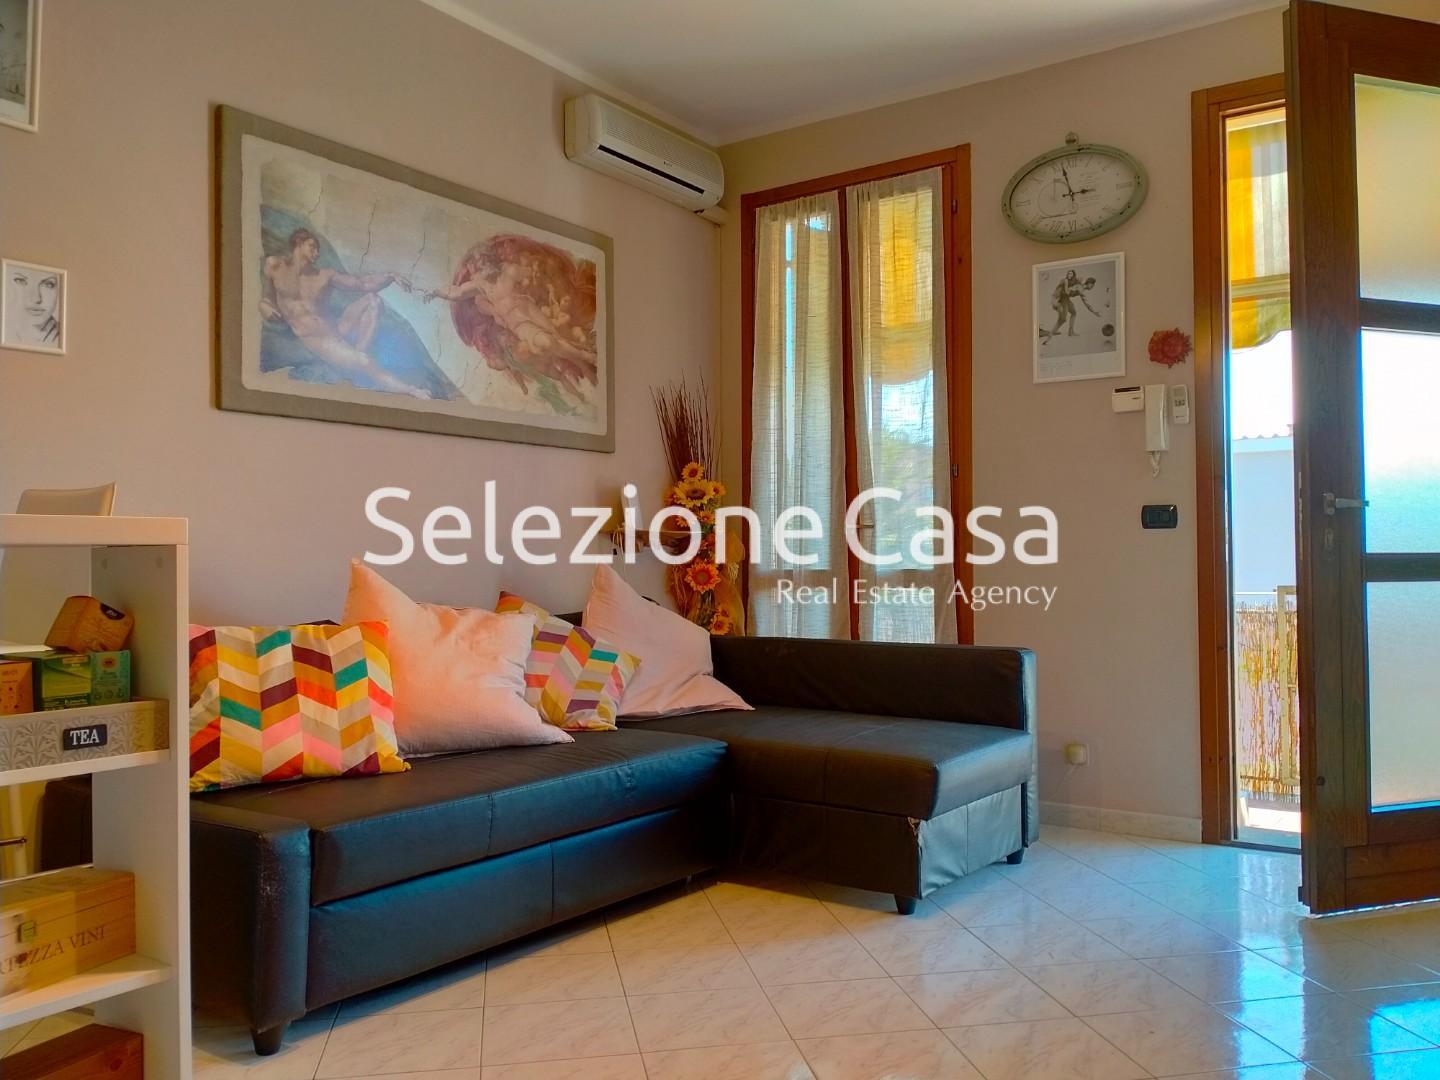 Appartamento in vendita a Falorni, Santa Maria A Monte (PI)